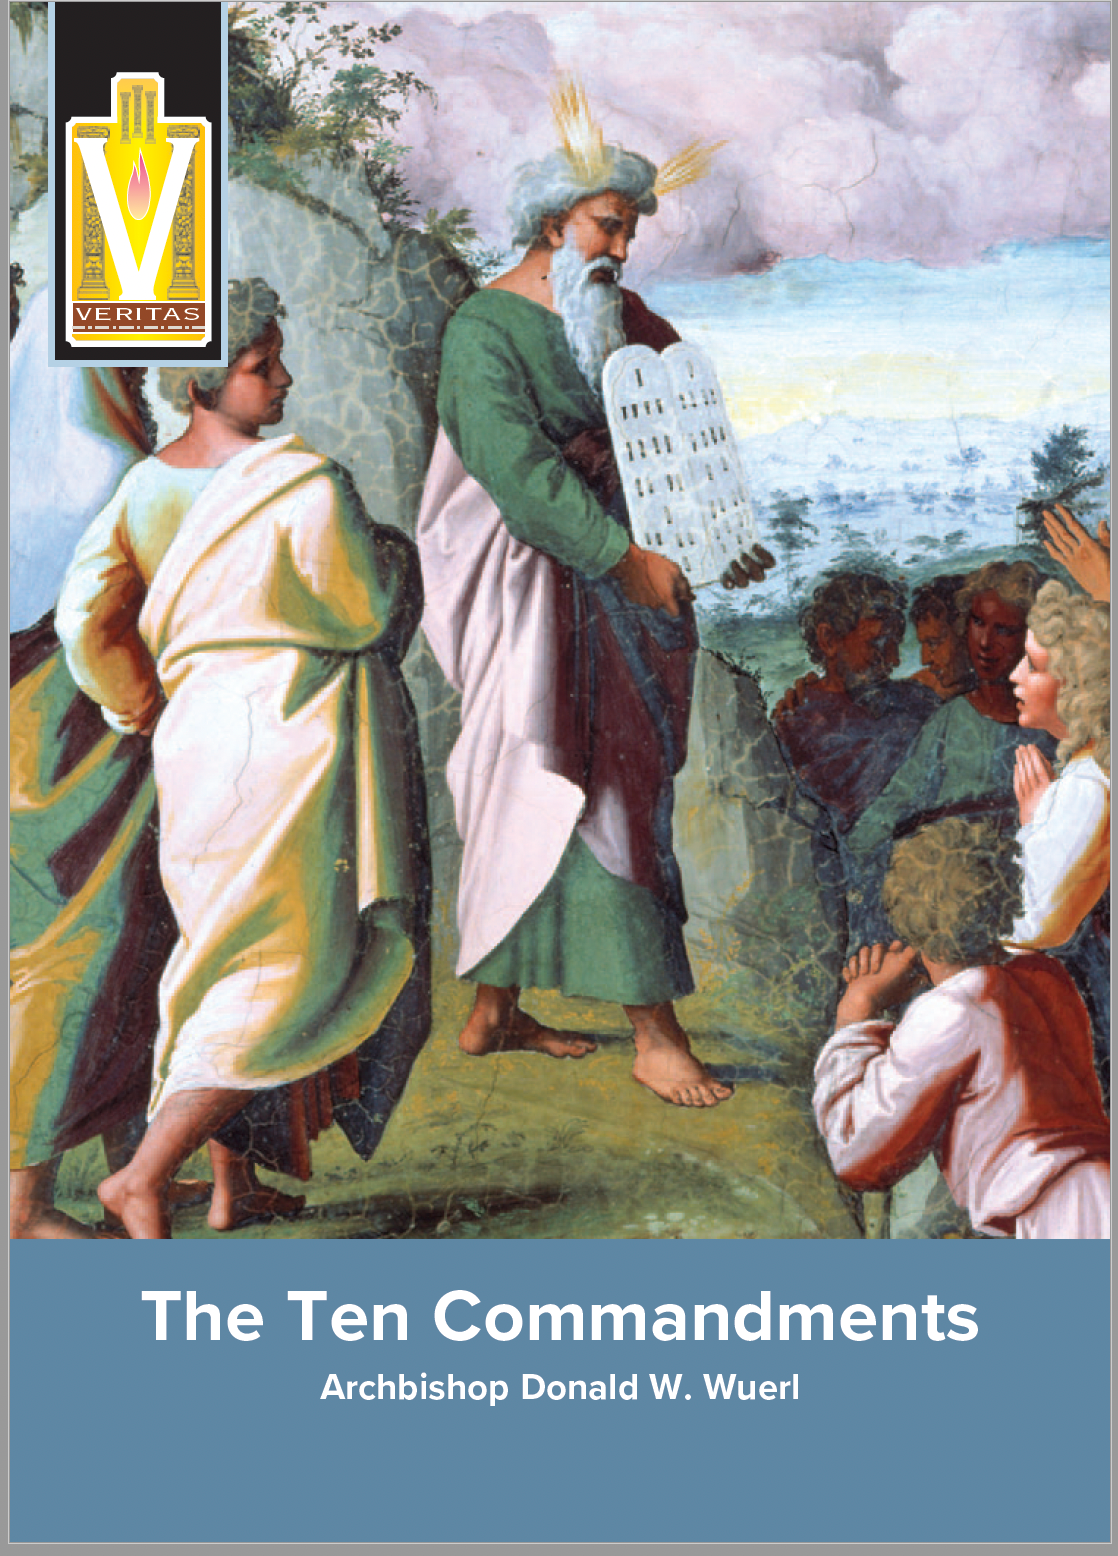 The Ten Commandments Booklet